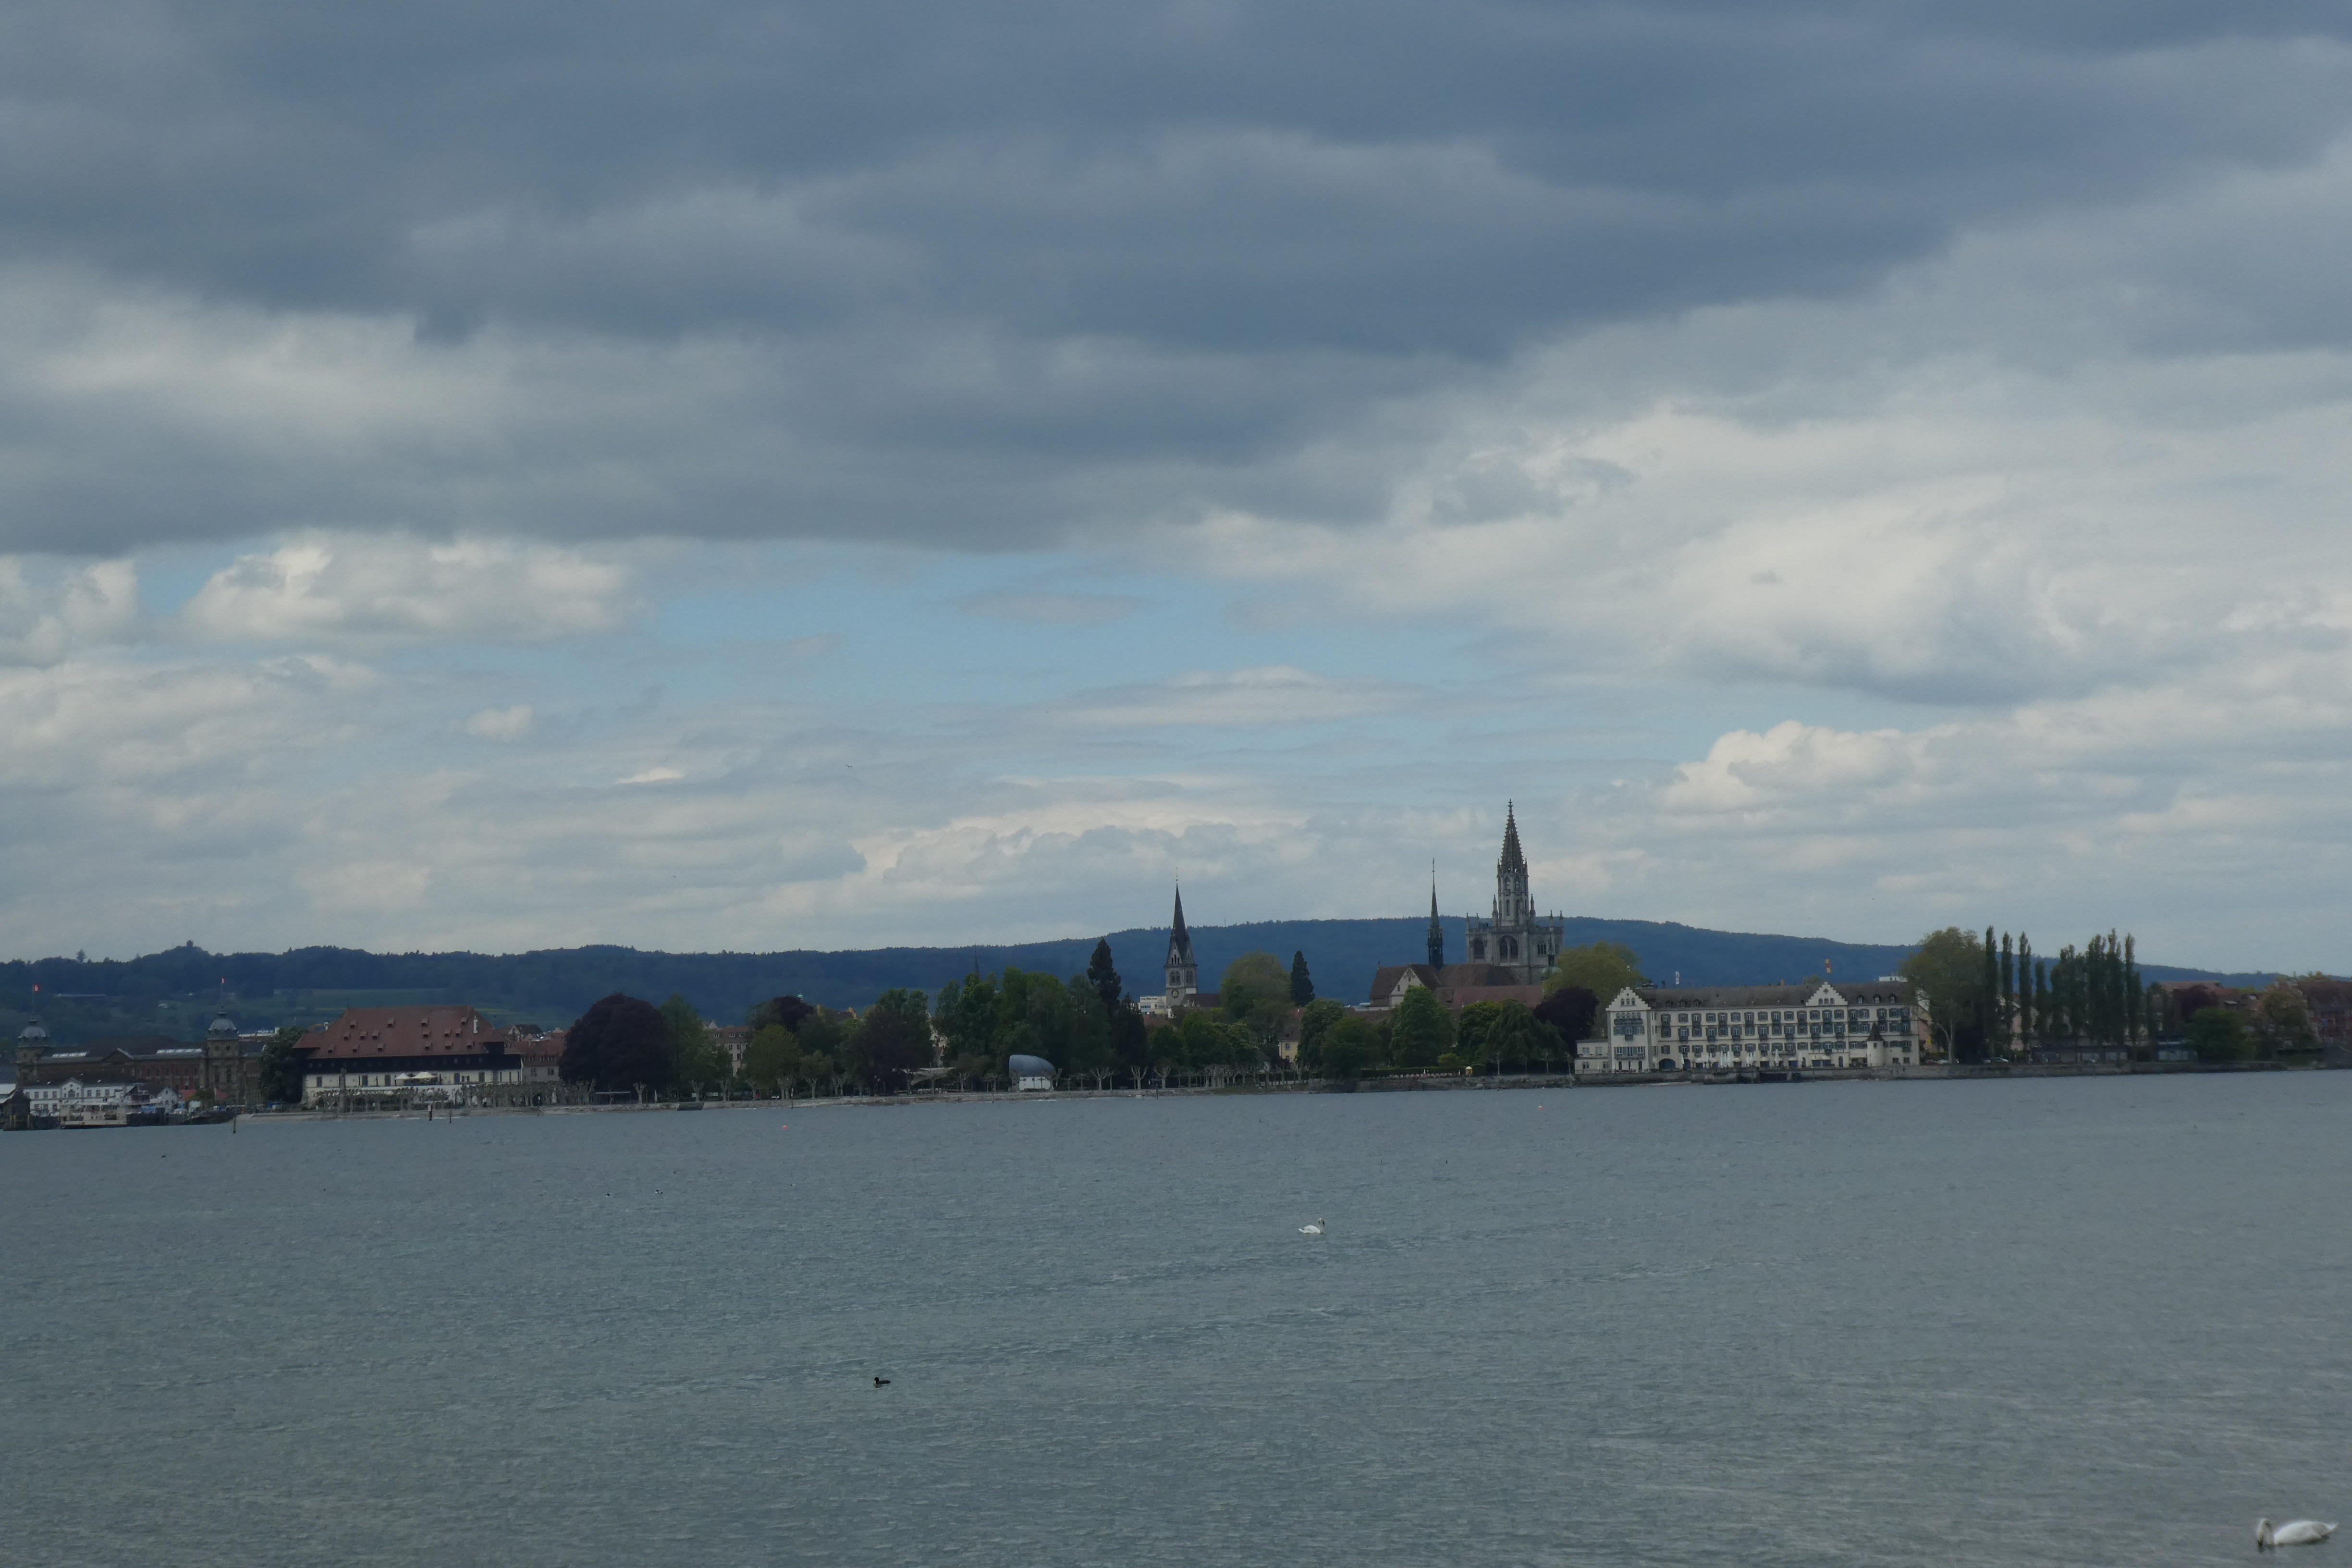 Aussichtspunkte in Konstanz: Die Schmugglerbucht